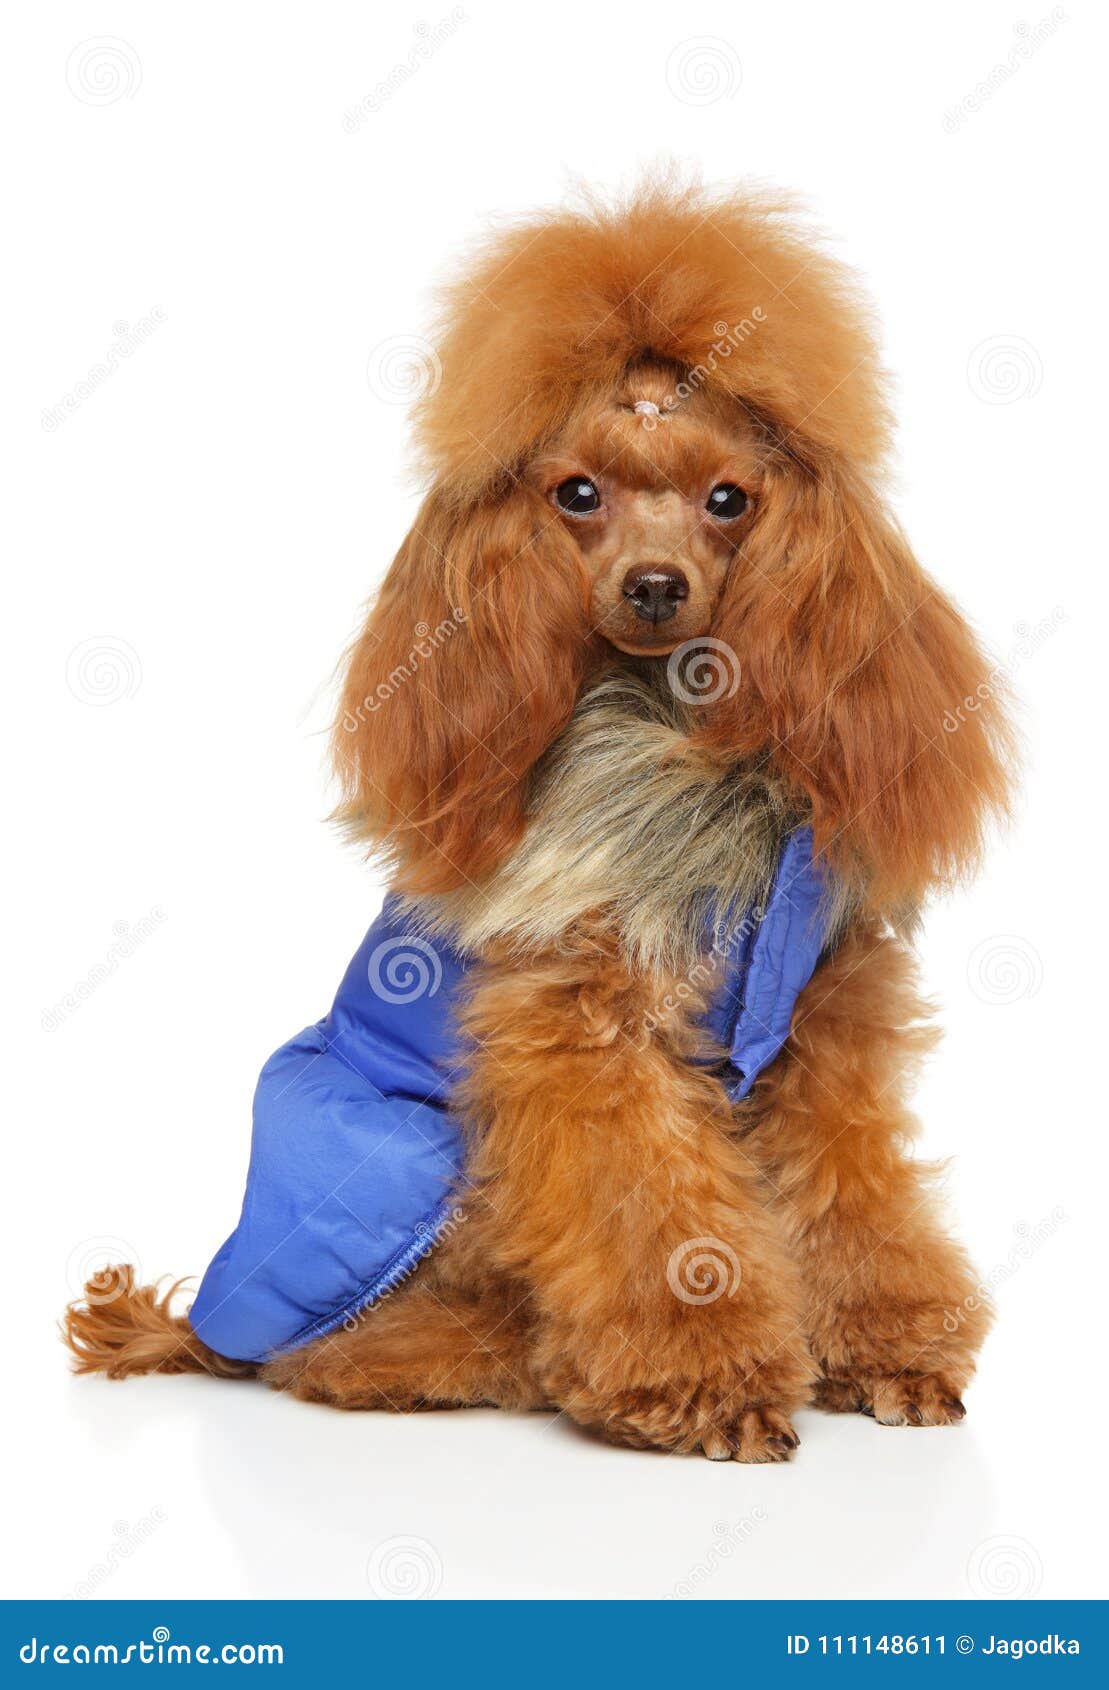 Toy Poodle En La Para Los Perros Imagen de archivo - Imagen de preparado, mascotas: